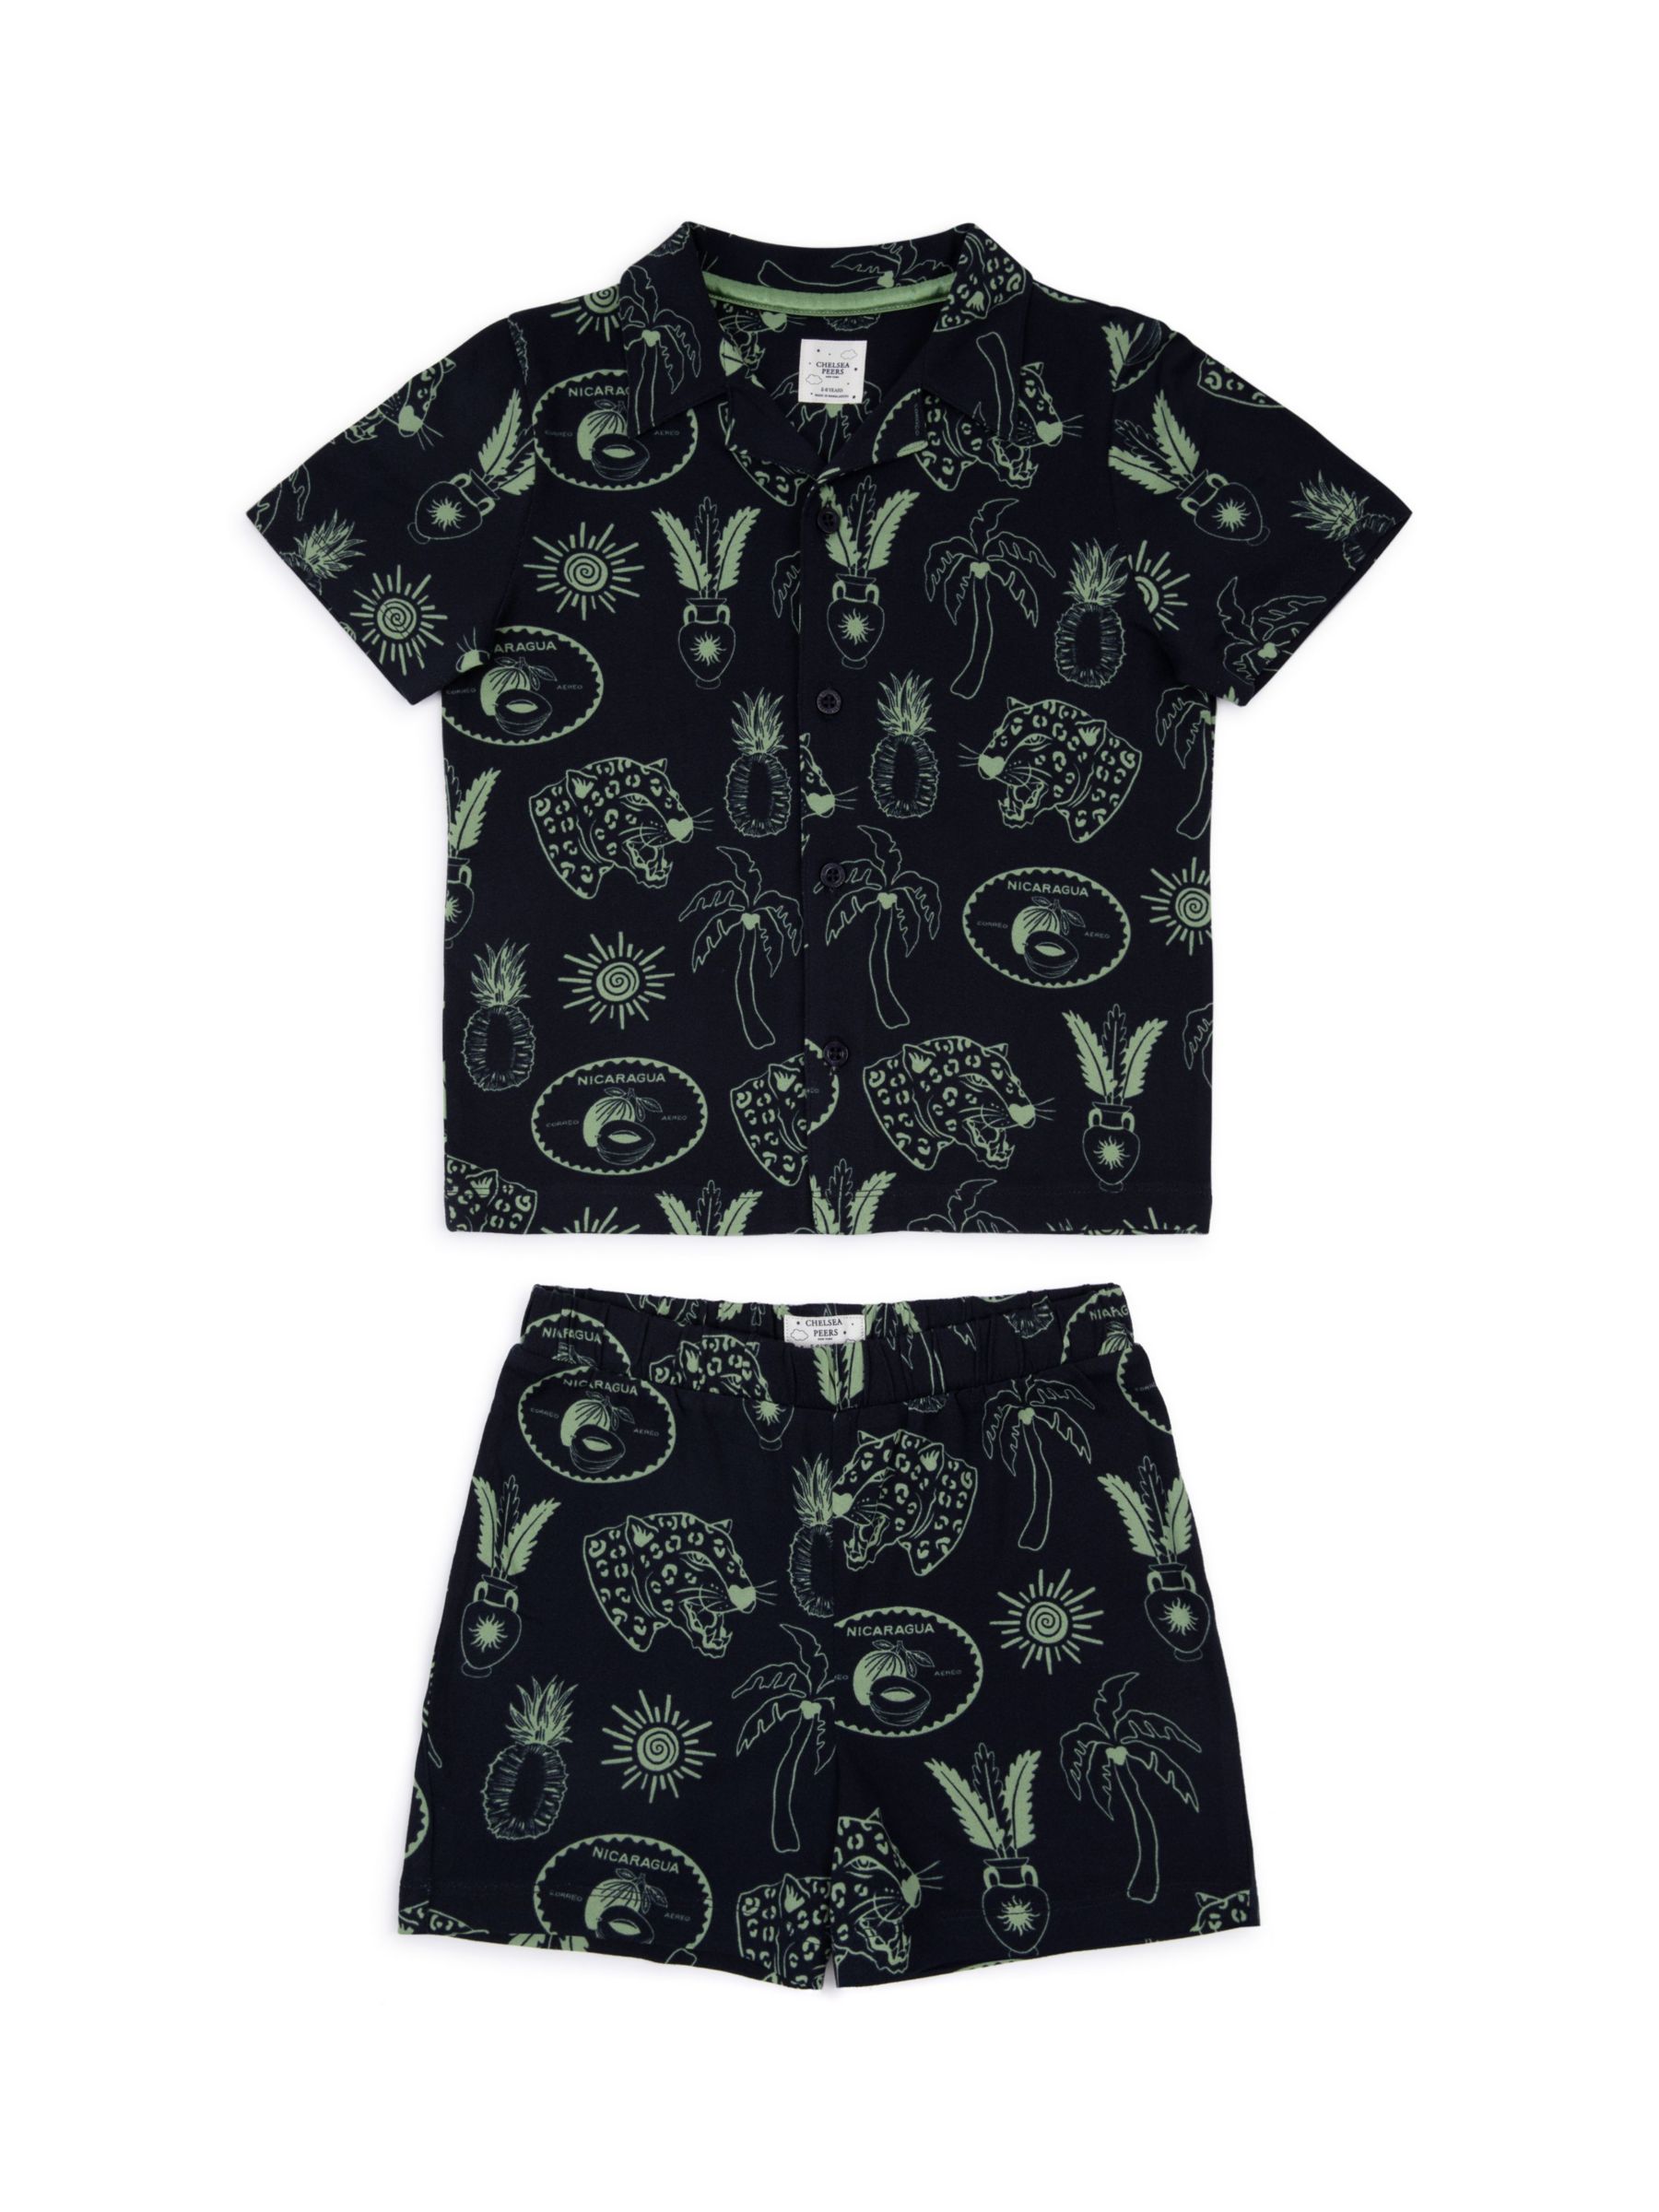 Chelsea Peers Kids' Tropical Holiday Print Shorts Pyjama Set, Navy, 9-10 years